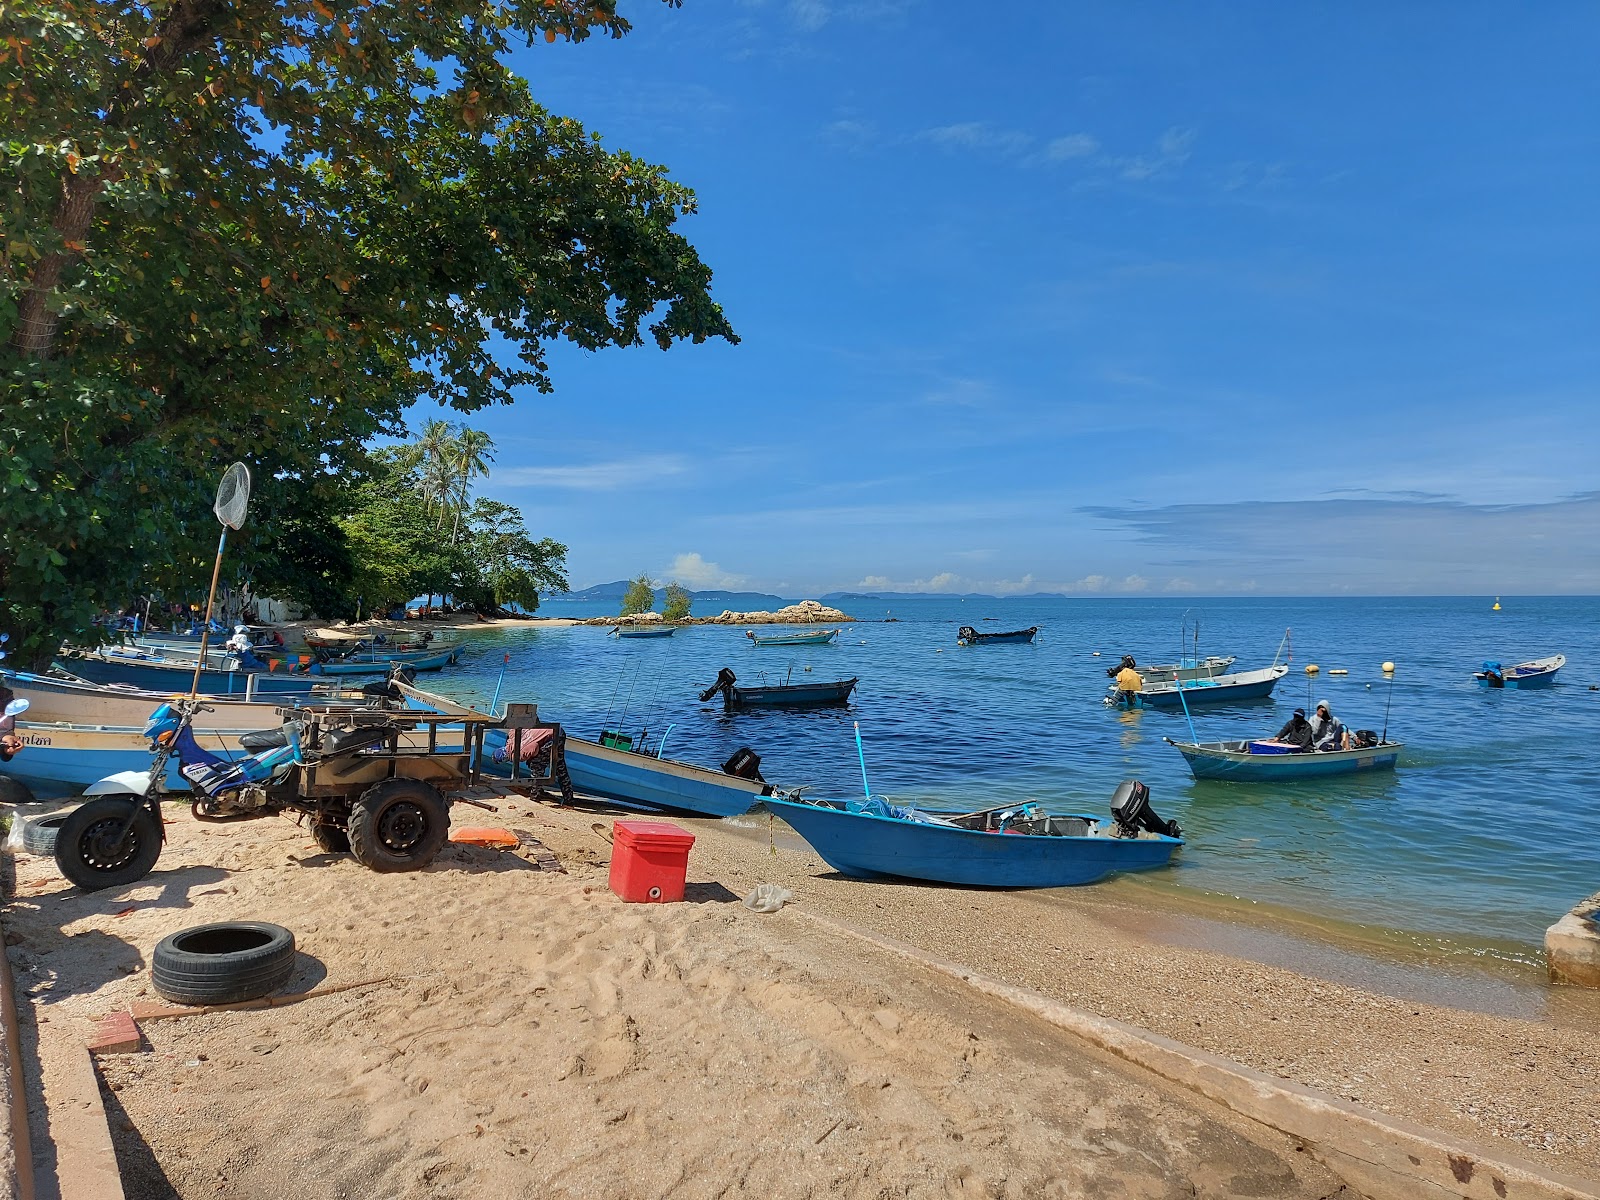 Photo de Wongamat beach - endroit populaire parmi les connaisseurs de la détente